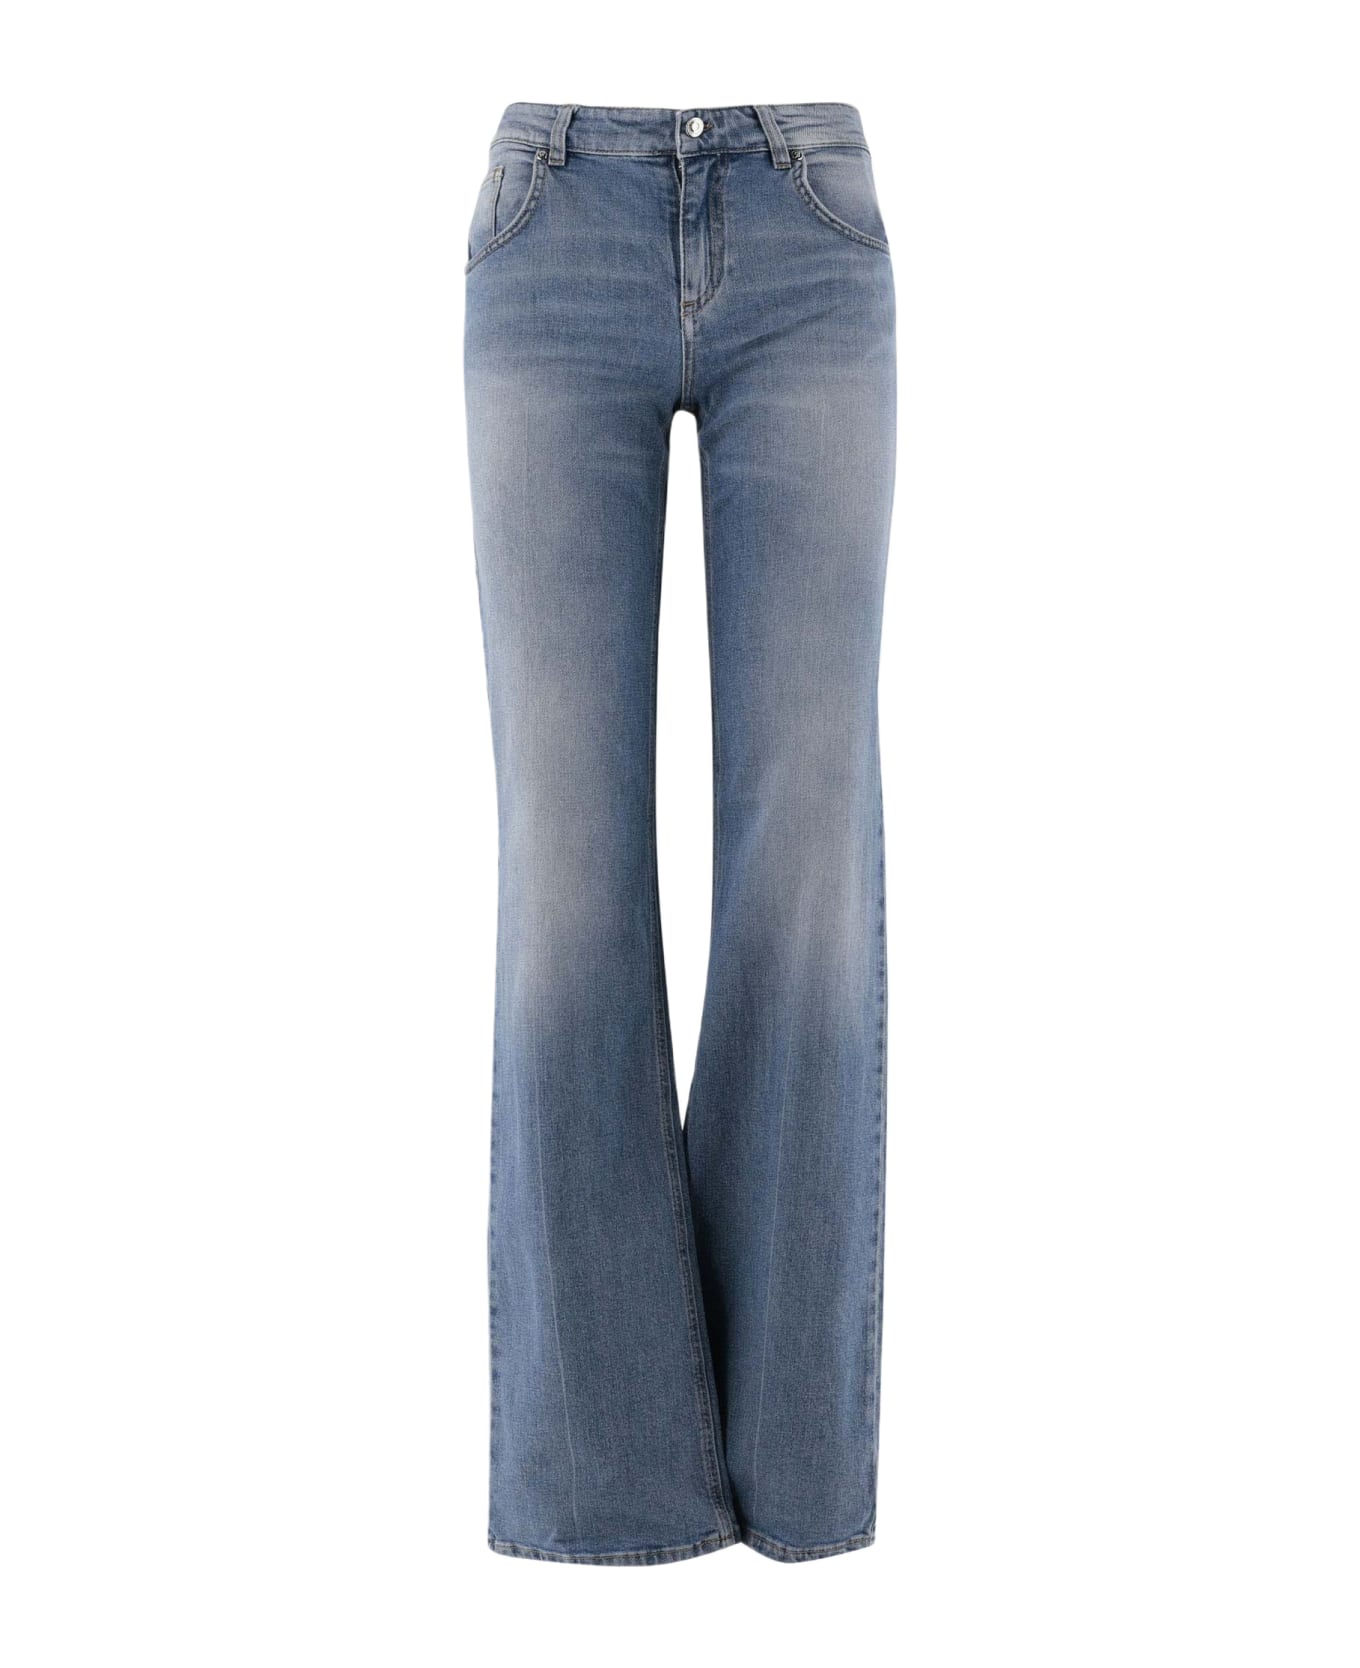 Blumarine Flared Jeans In Stretch Cotton Denim - Denim デニム